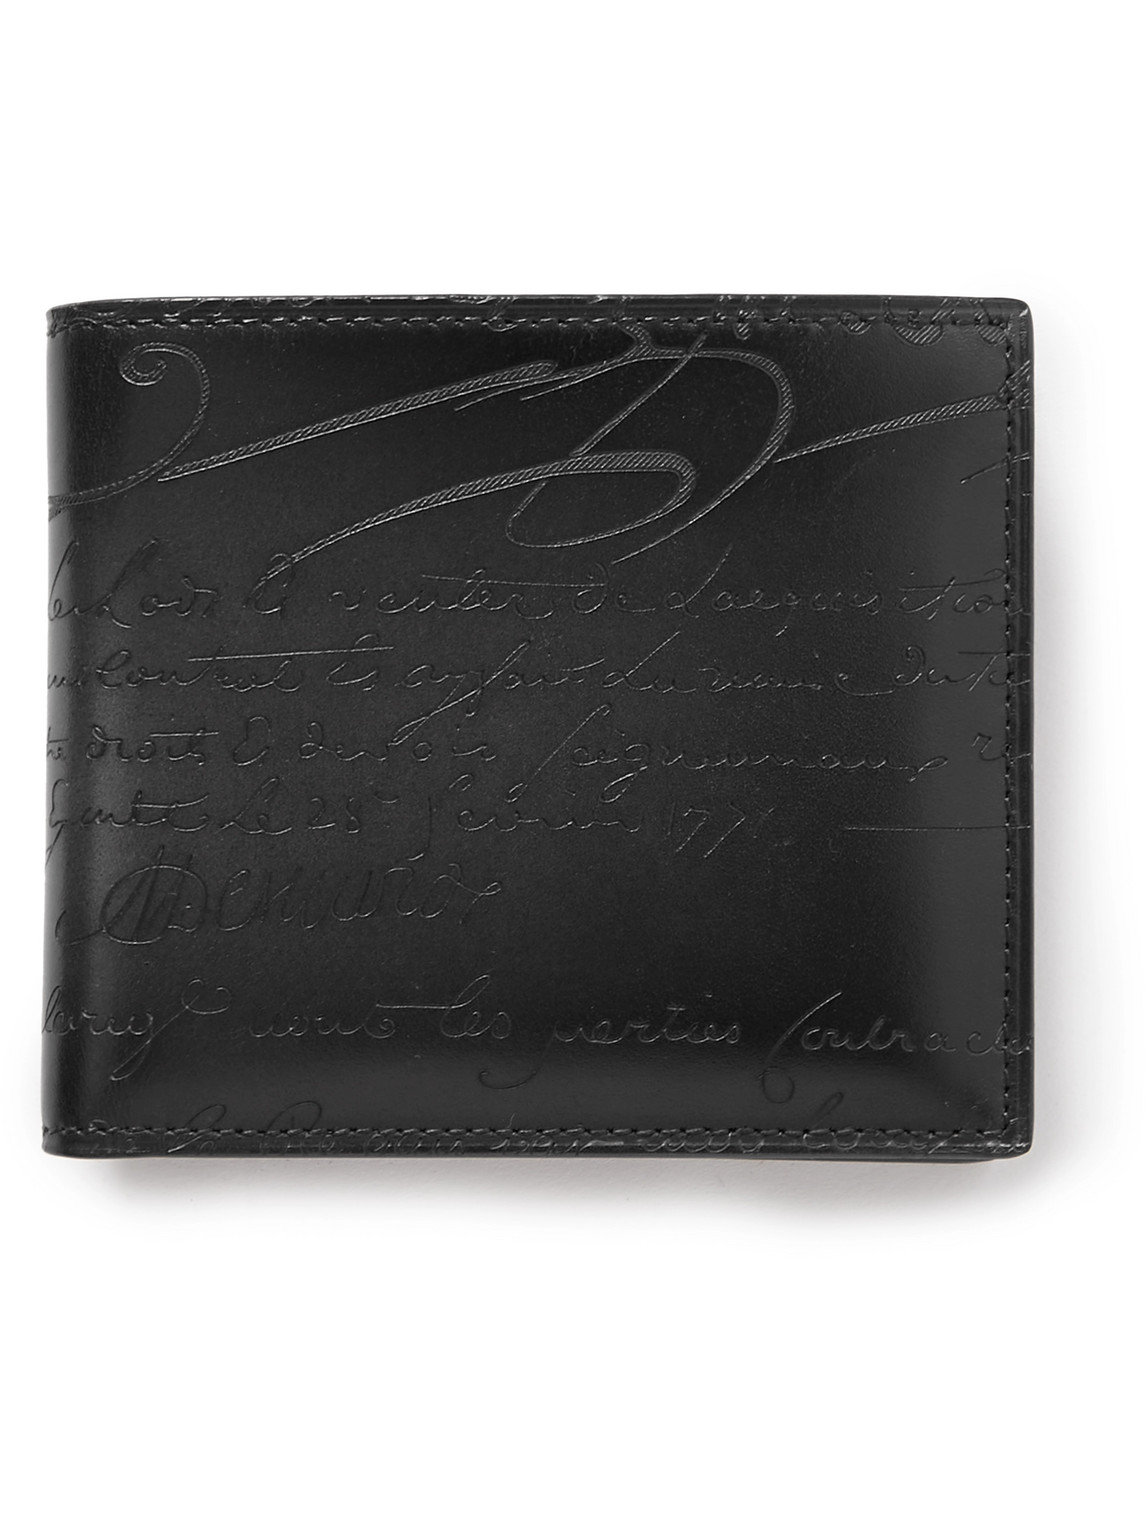 Makore Scritto Venezia Leather Billfold Wallet